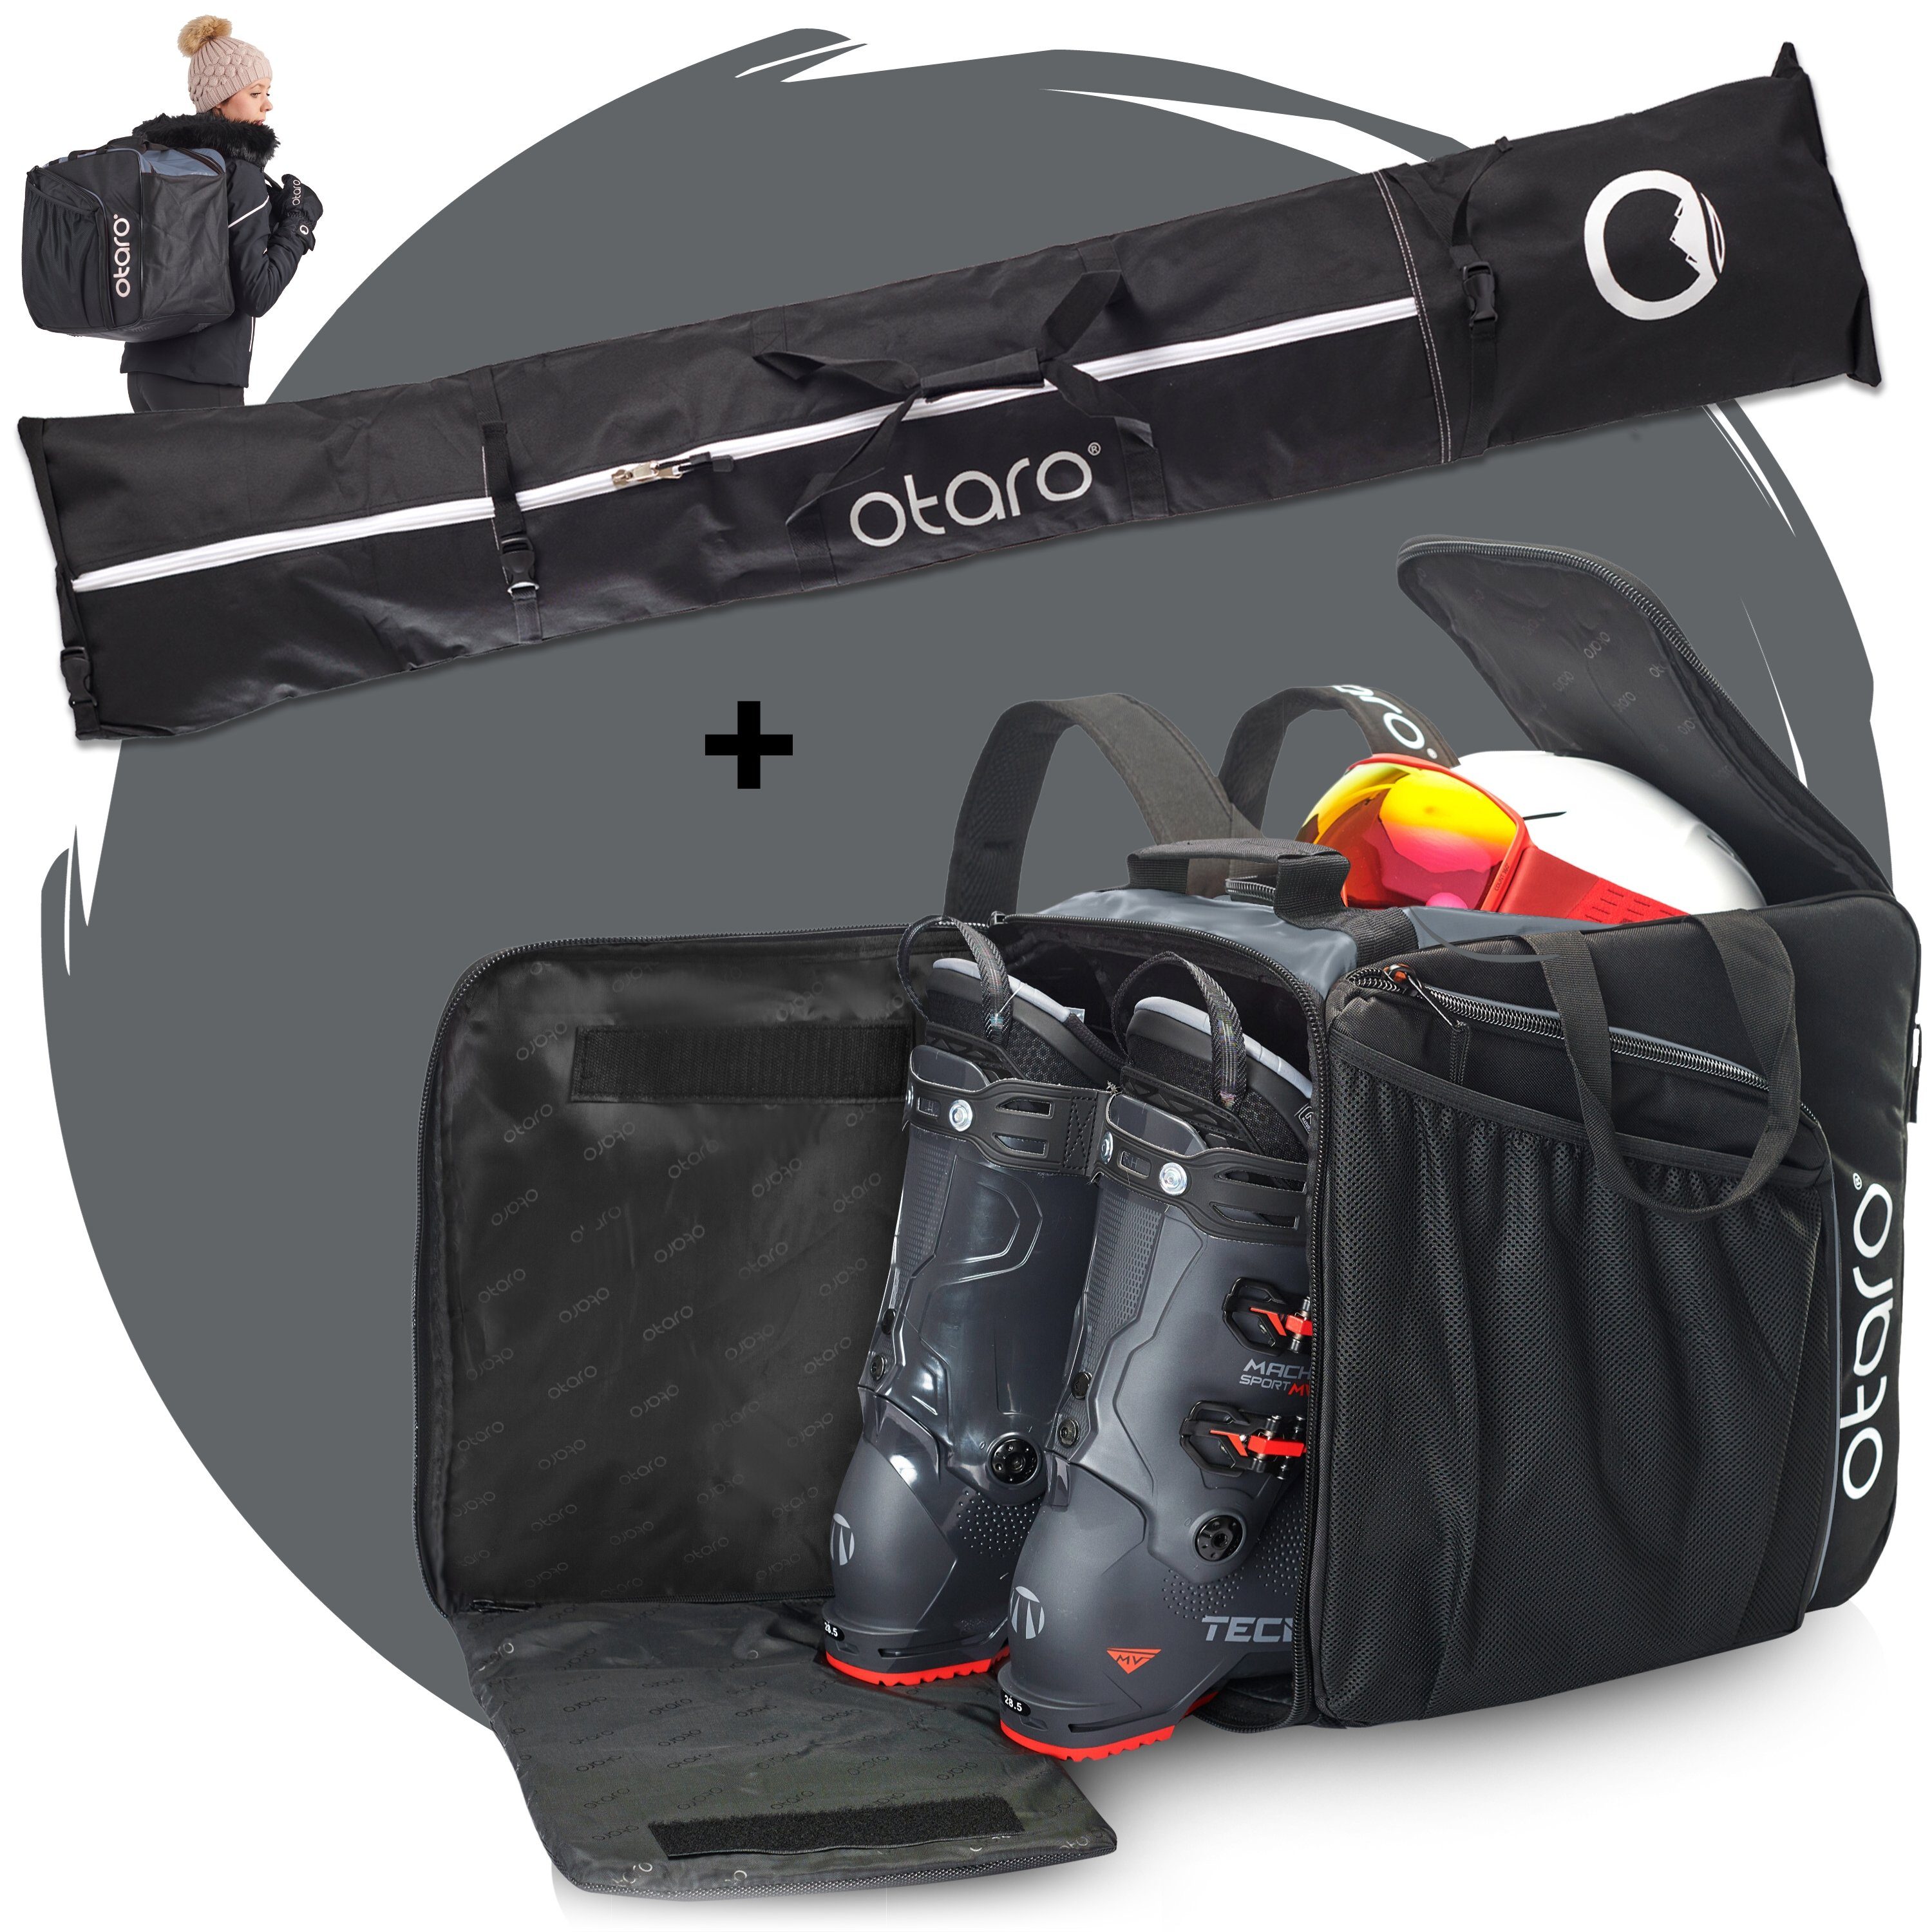 Otaro Skitasche Set: Skischuhtasche mit Schuhfach & Skitasche, Pro-Set für 2 Paar Ski (Schutz für deine Ausrüstung, Perfekt durchdacht, ausklappbare Standfläche, für 2 Paar Ski + Stöcke) Schwarz Felsgrau